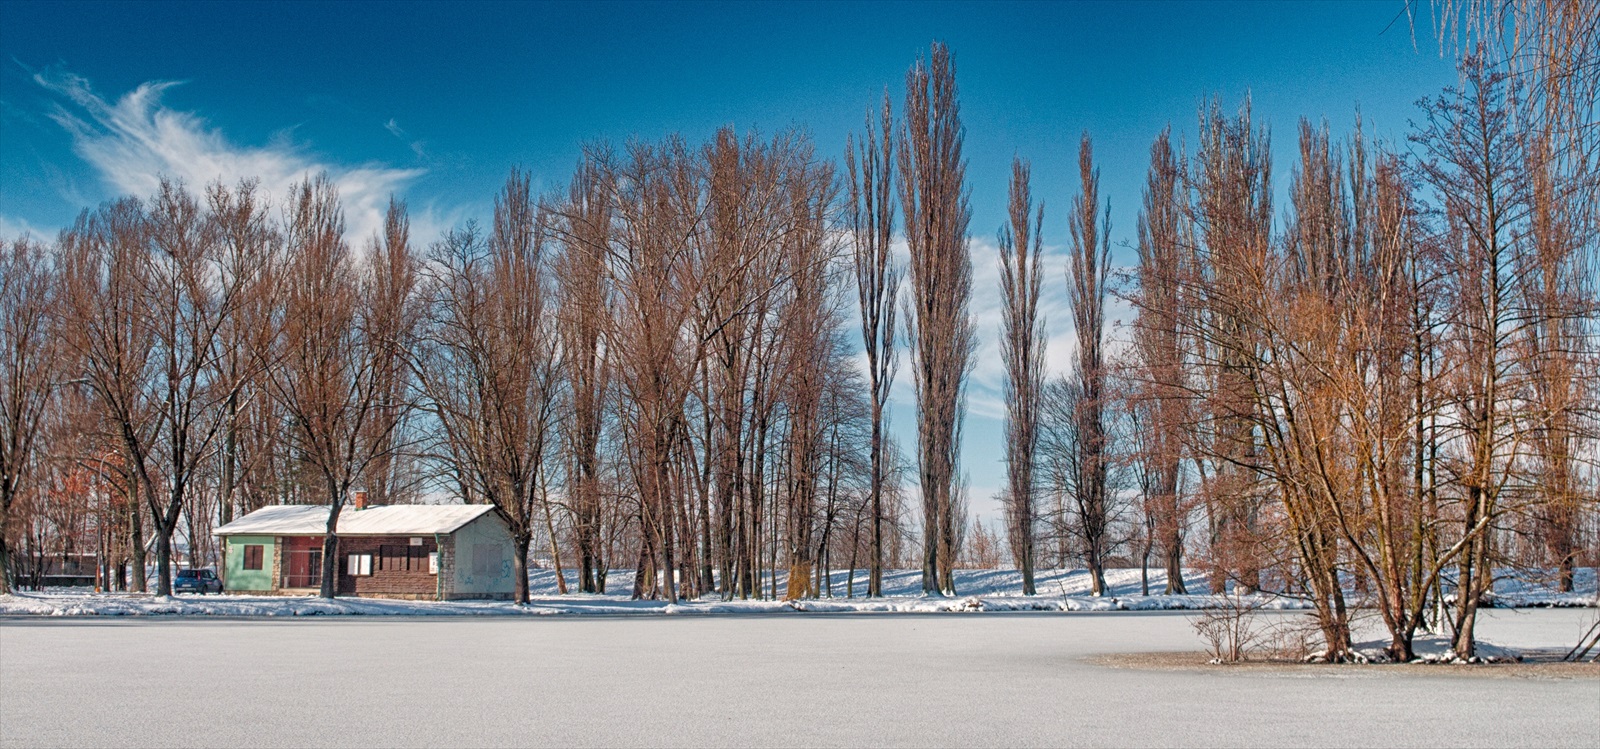 Slovakia, Nitra: Sleep In The Snow #PHOTOFRANO